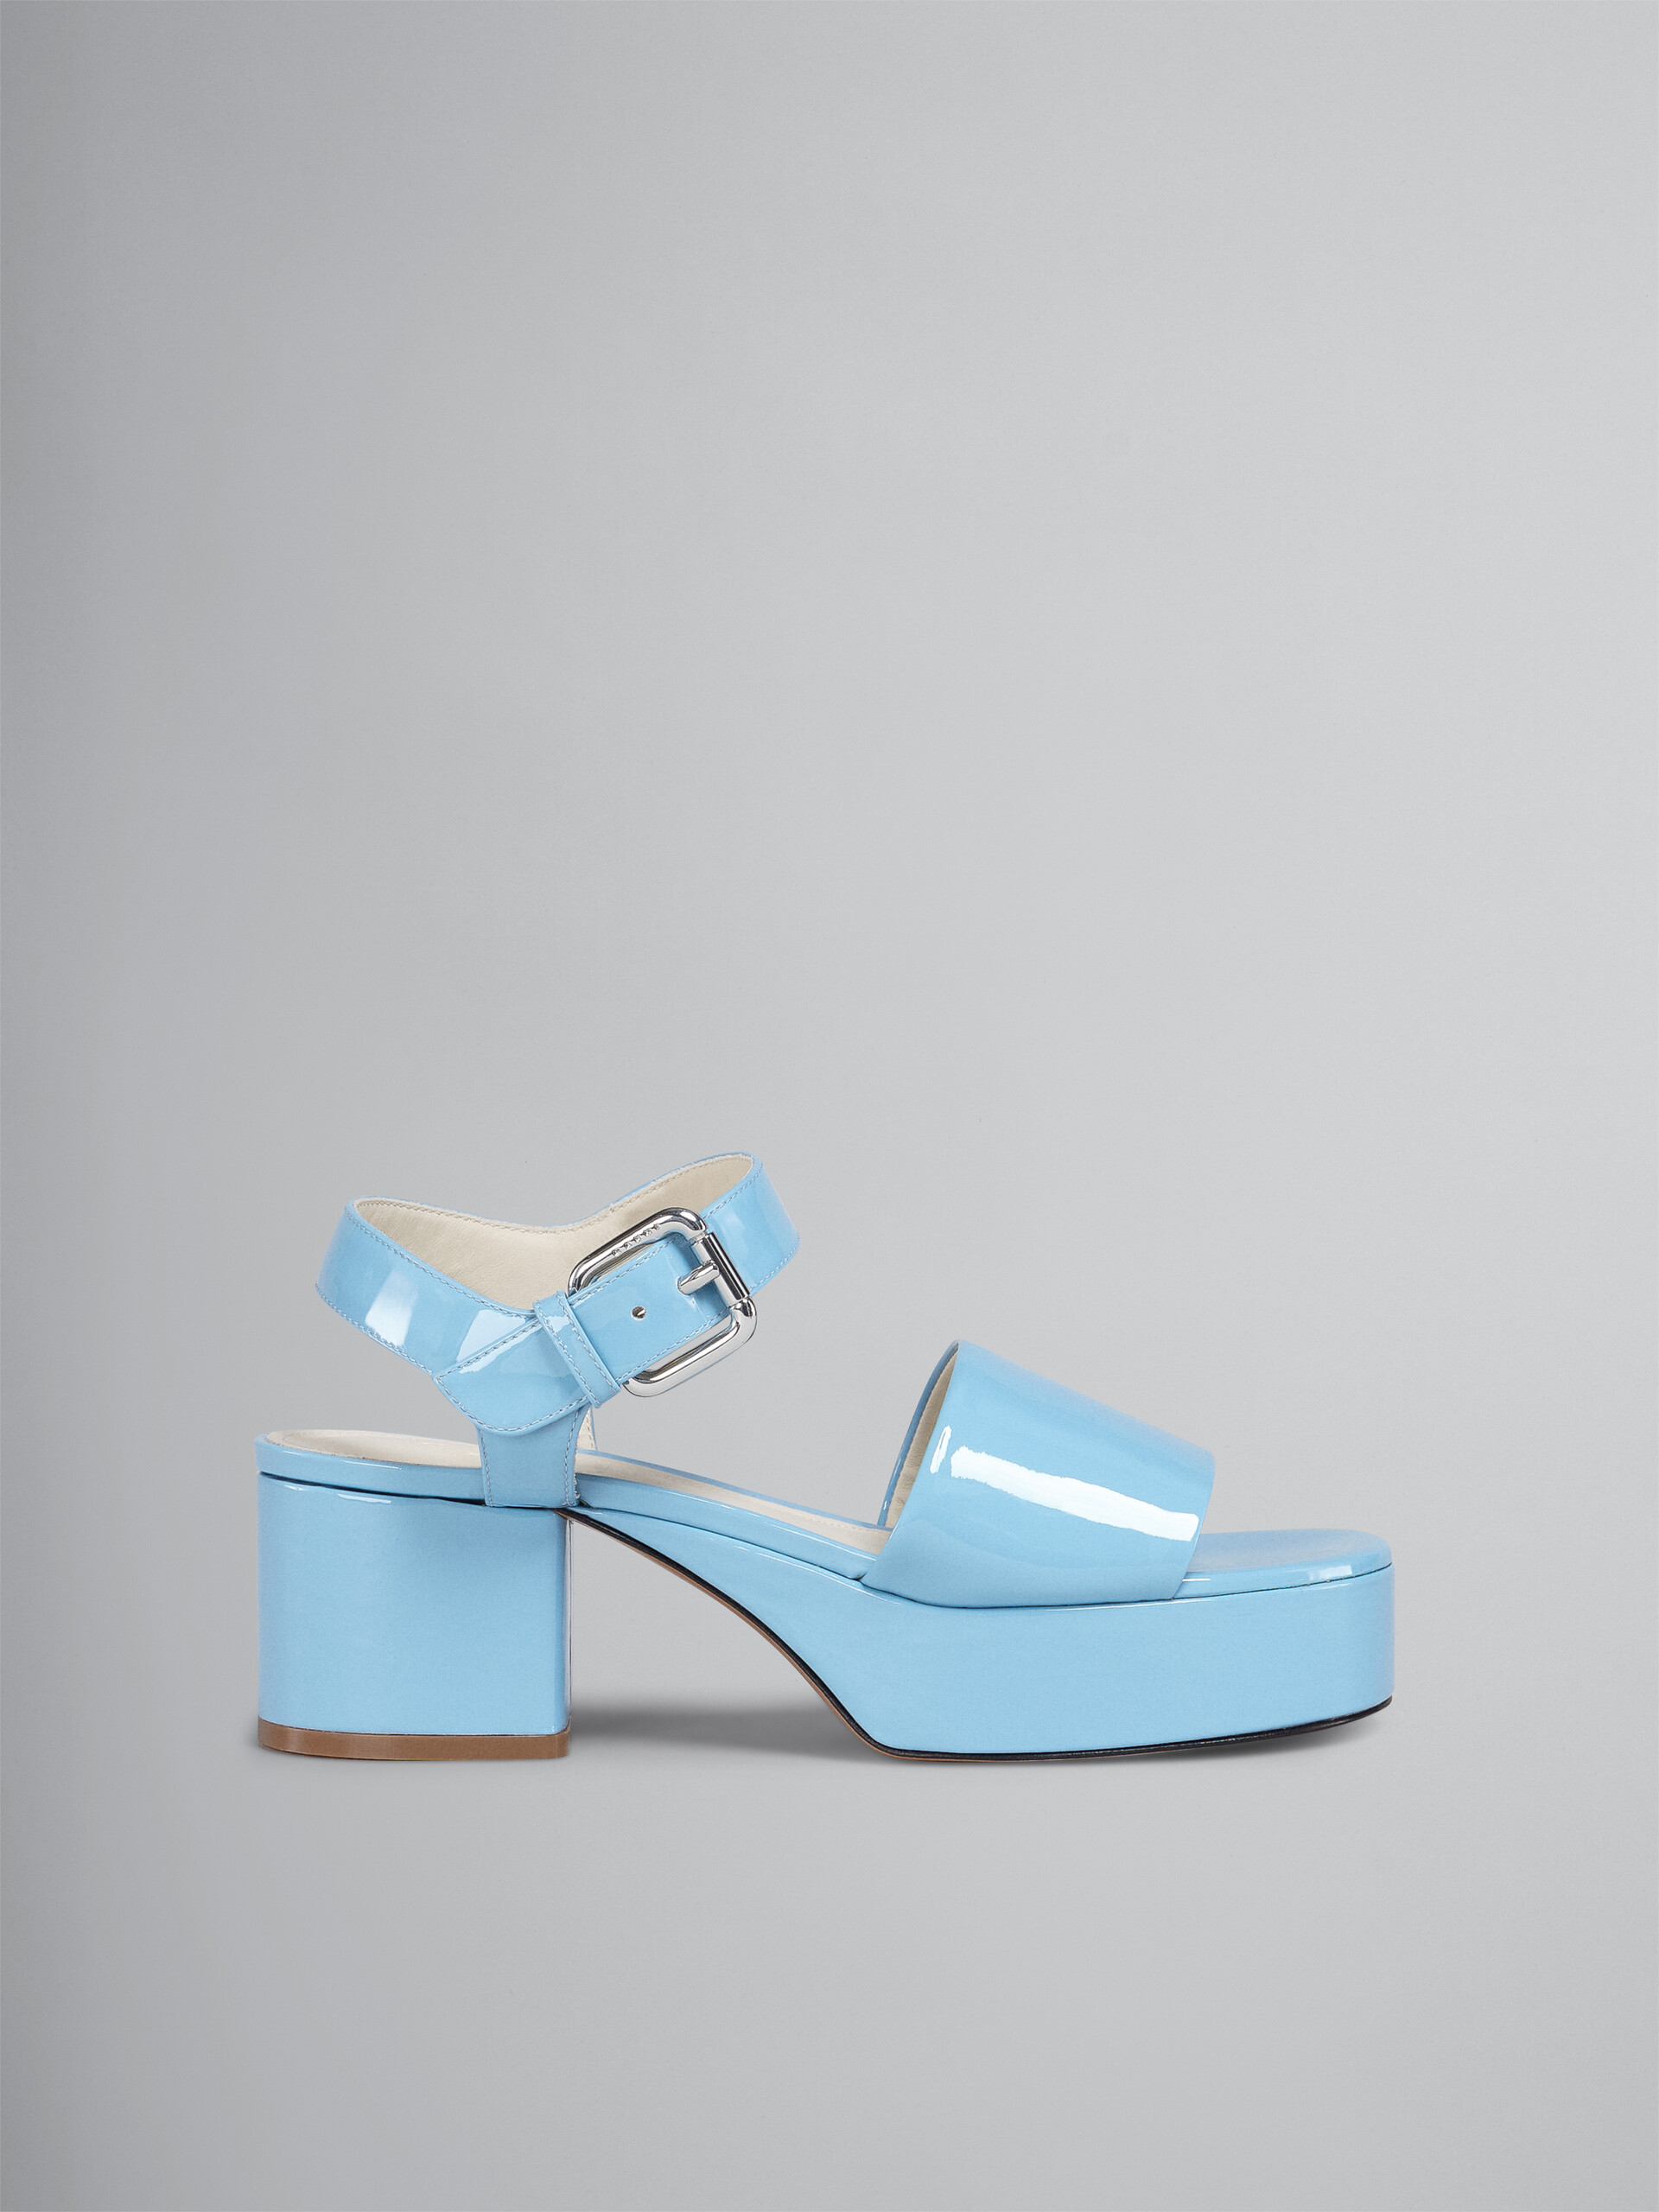 Pale blue patent leather sandal - Sandals - Image 1